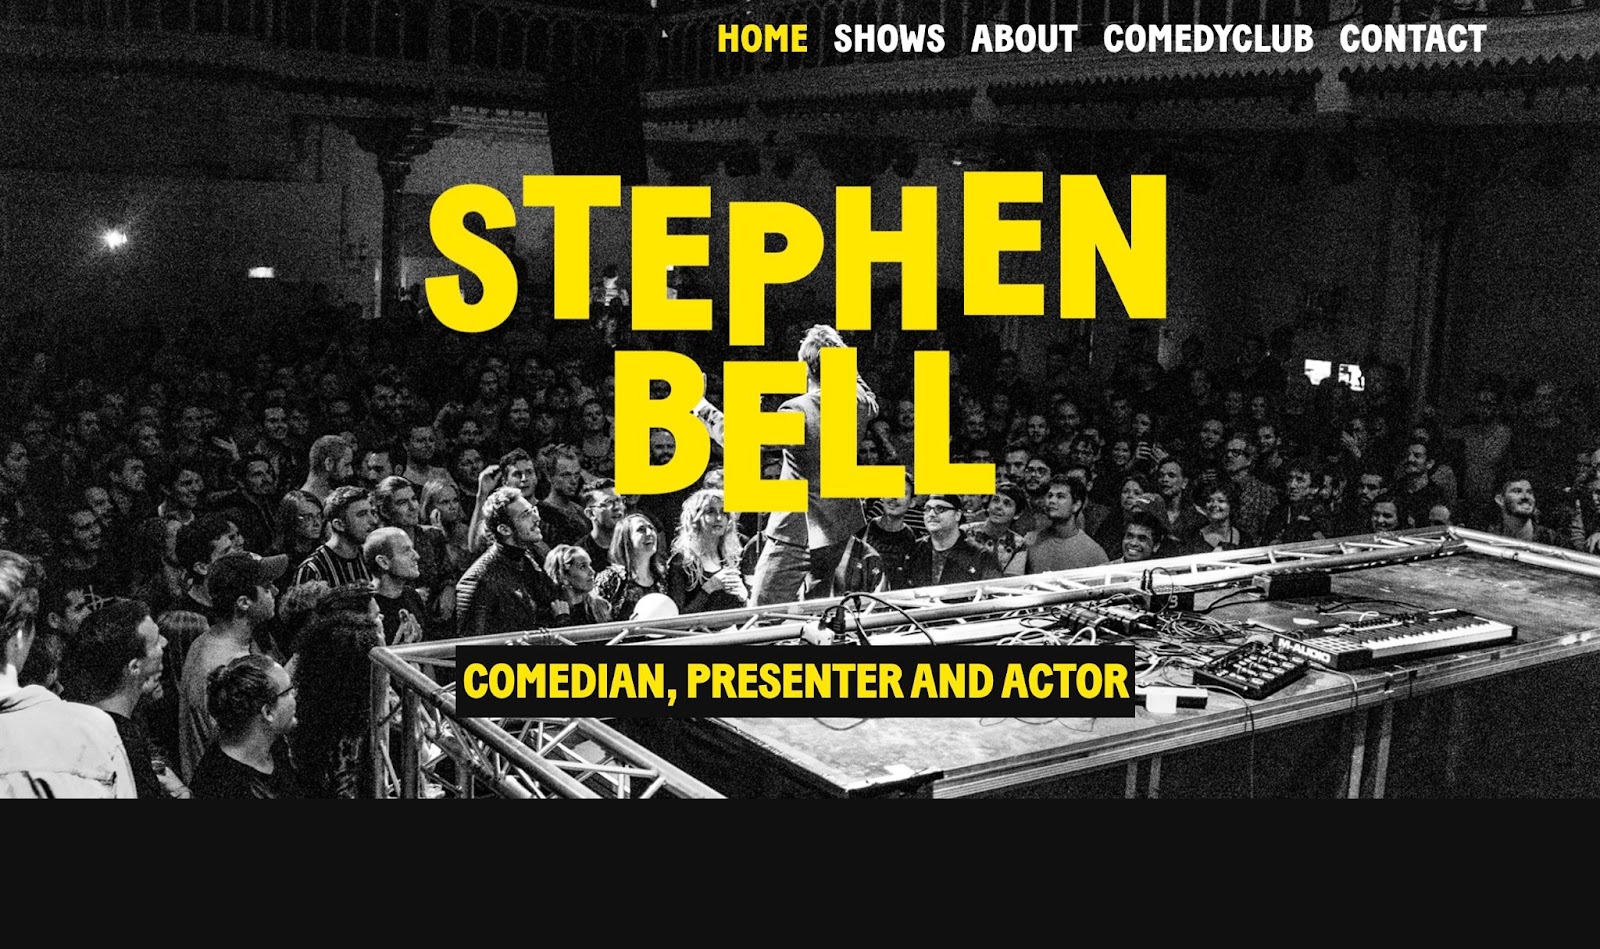 Uno scatto di una folla comica che ascolta il fumetto Stephen Bell. In cima all'immagine c'è un testo giallo in grassetto che recita "STEPHEN BELL" e sotto si legge "COMEDIAN, PRESENTATORE E ATTORE".